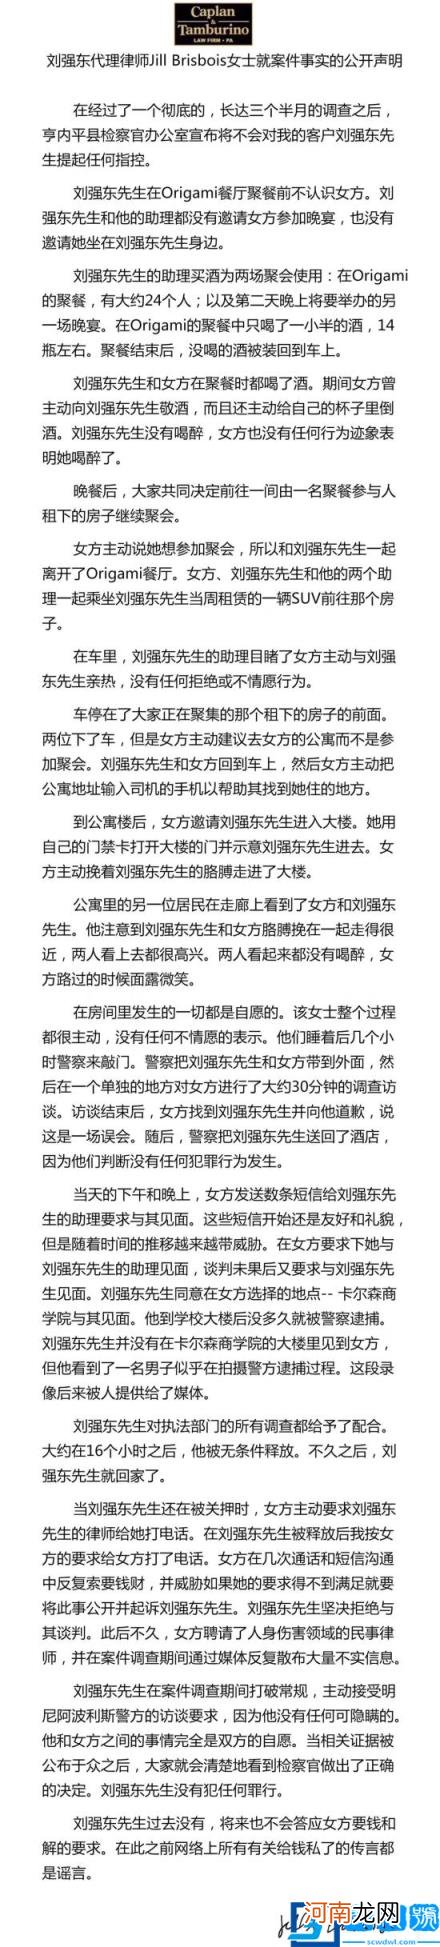 刘强东案件是怎么回事 宣布无罪公开事件详细过程